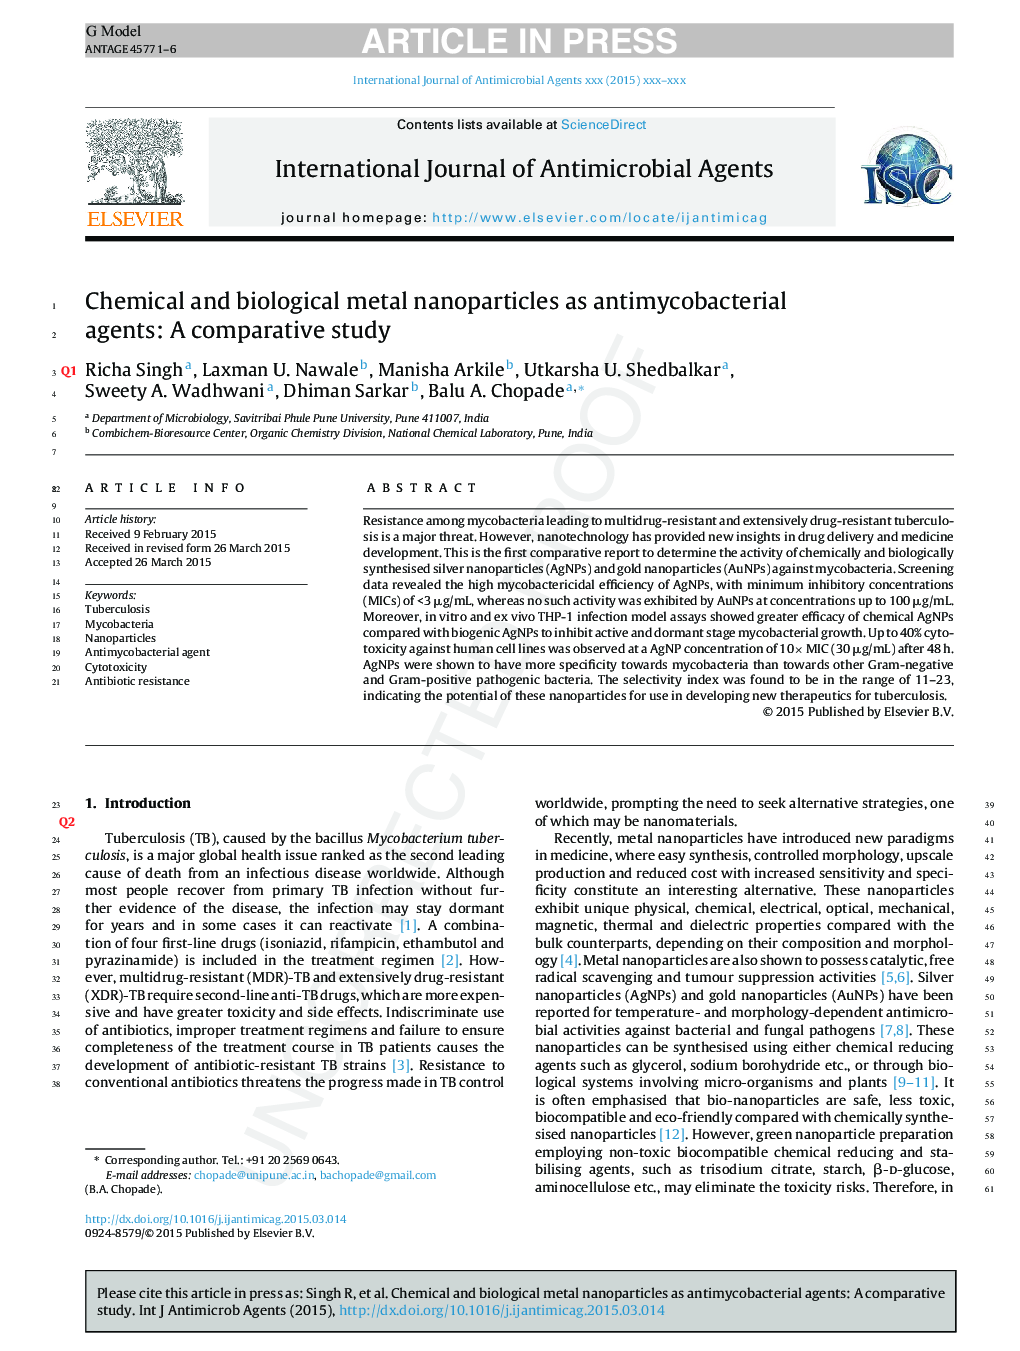 نانوذرات فلزی شیمیایی و بیولوژیکی به عنوان عوامل ضد باکتری: یک مطالعه مقایسه ای 